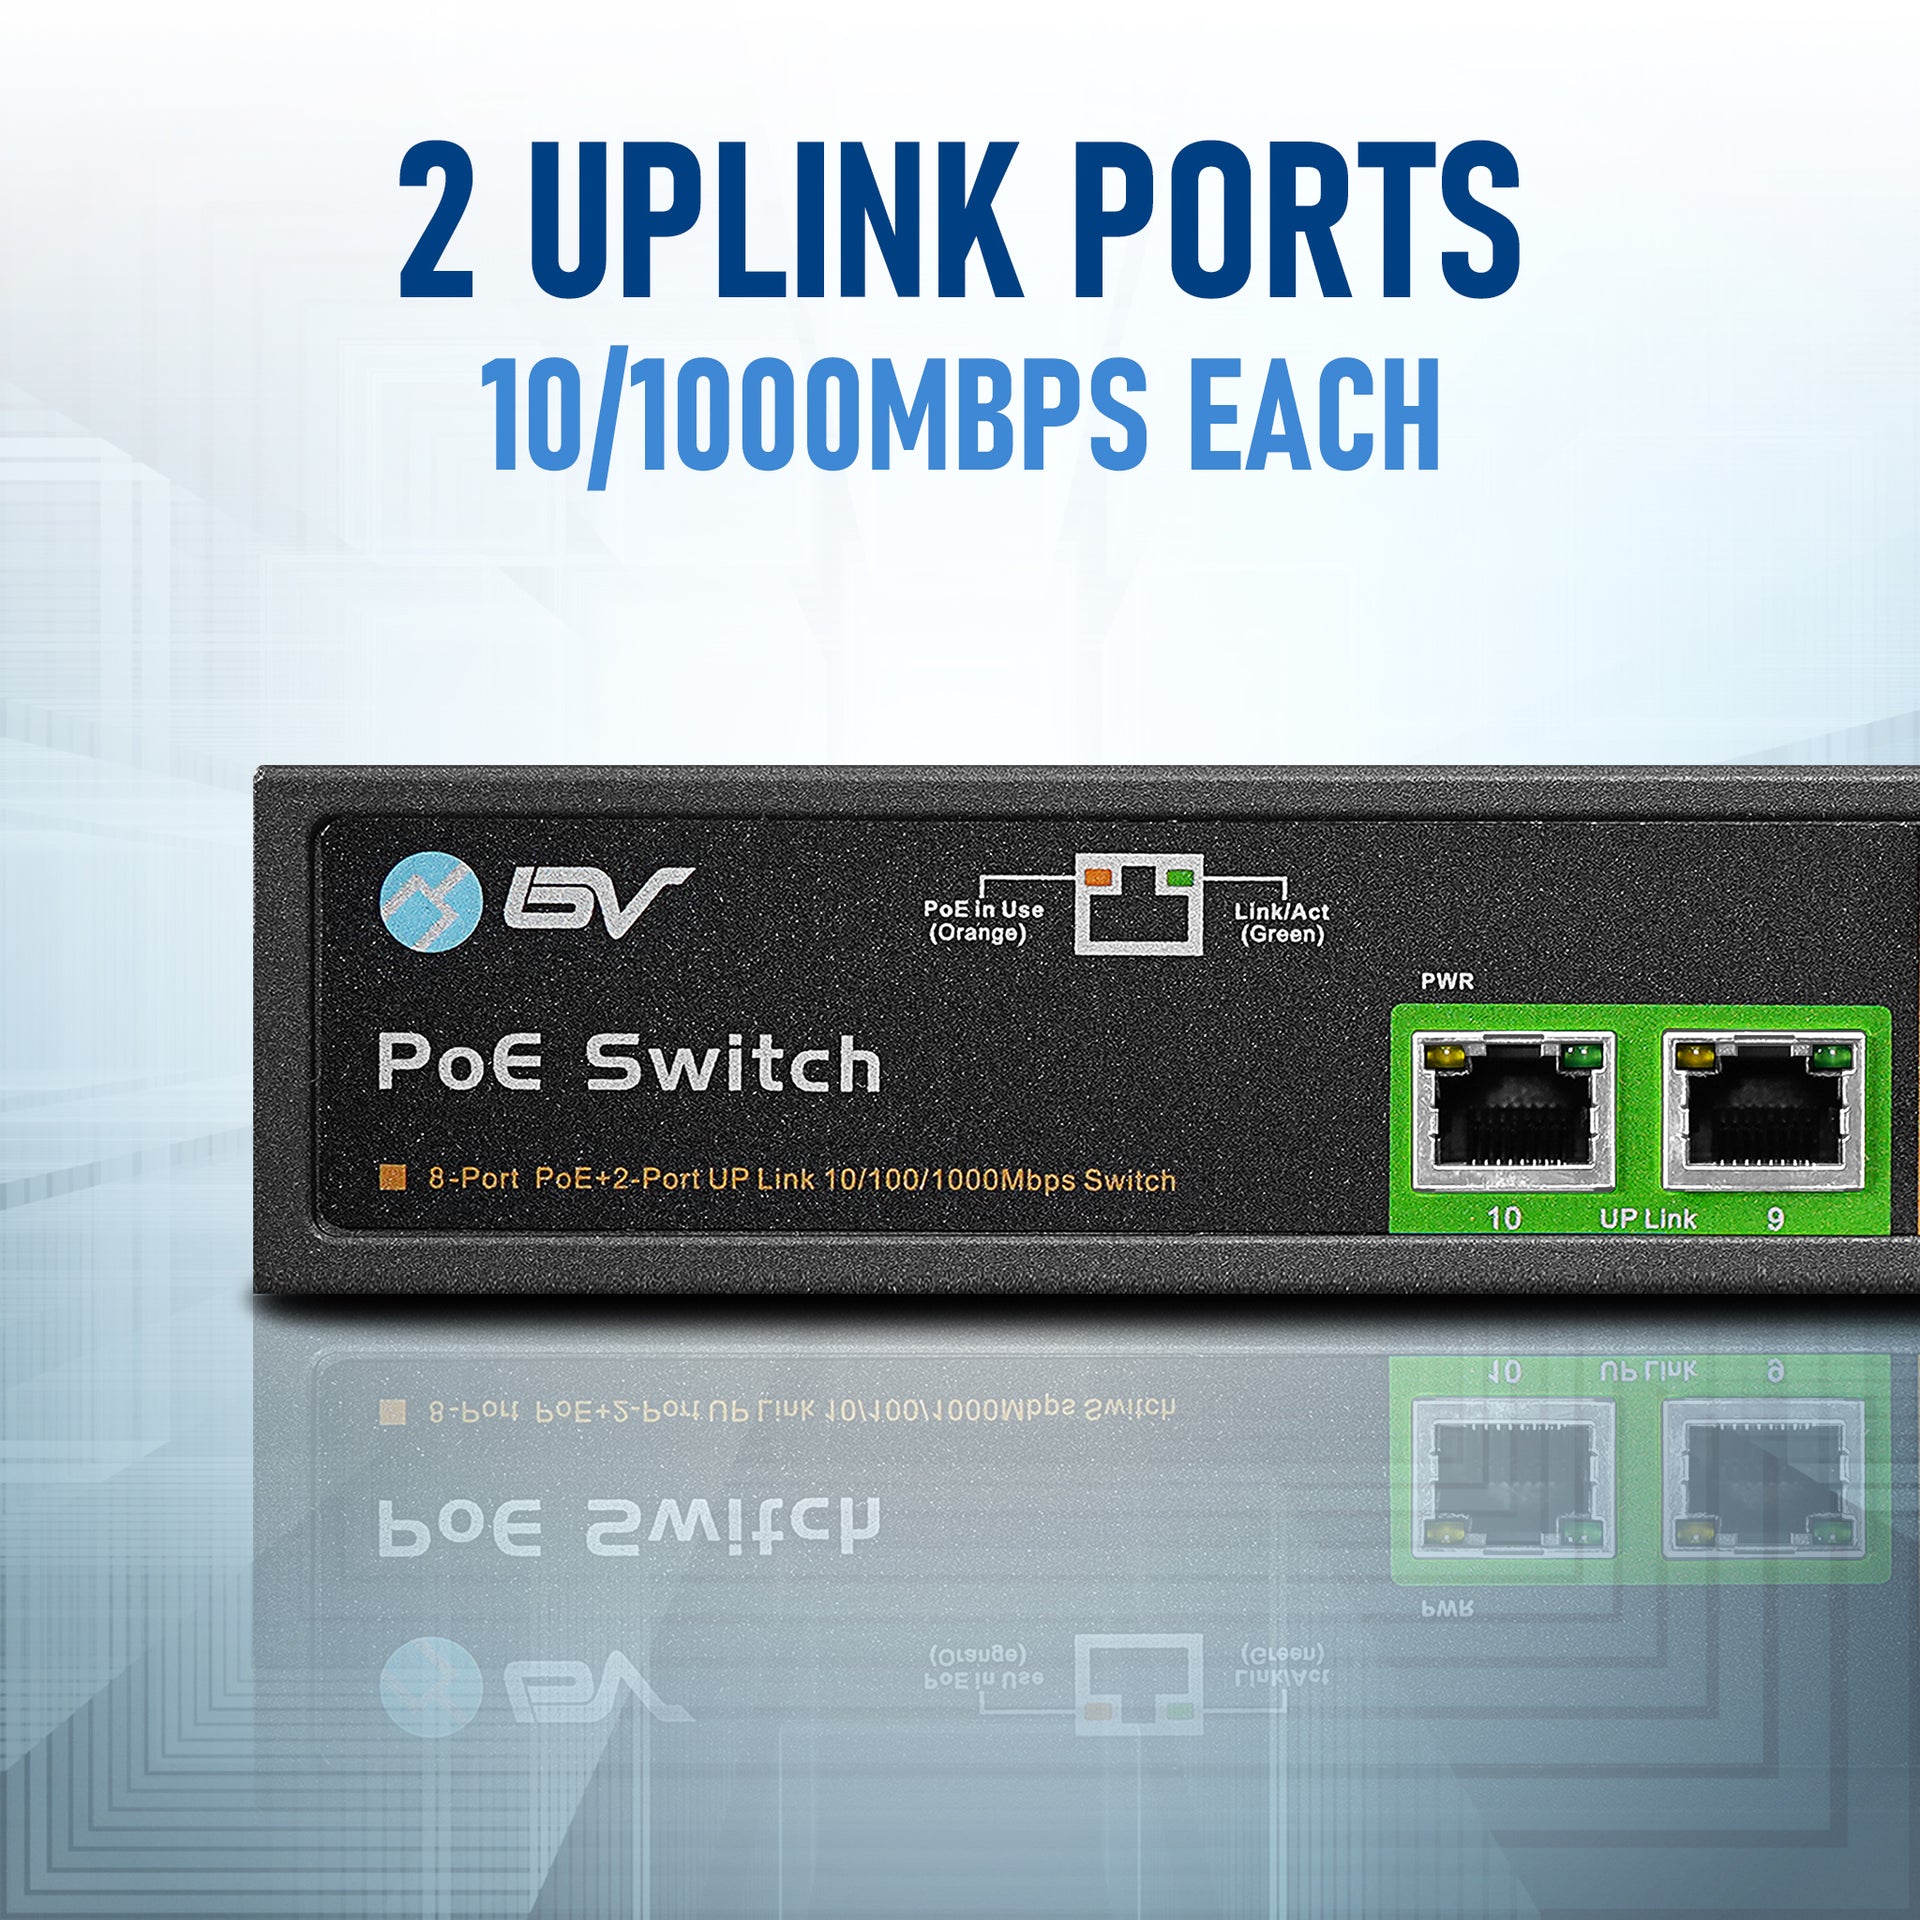 10/1000mbps each Uplink Port Speed